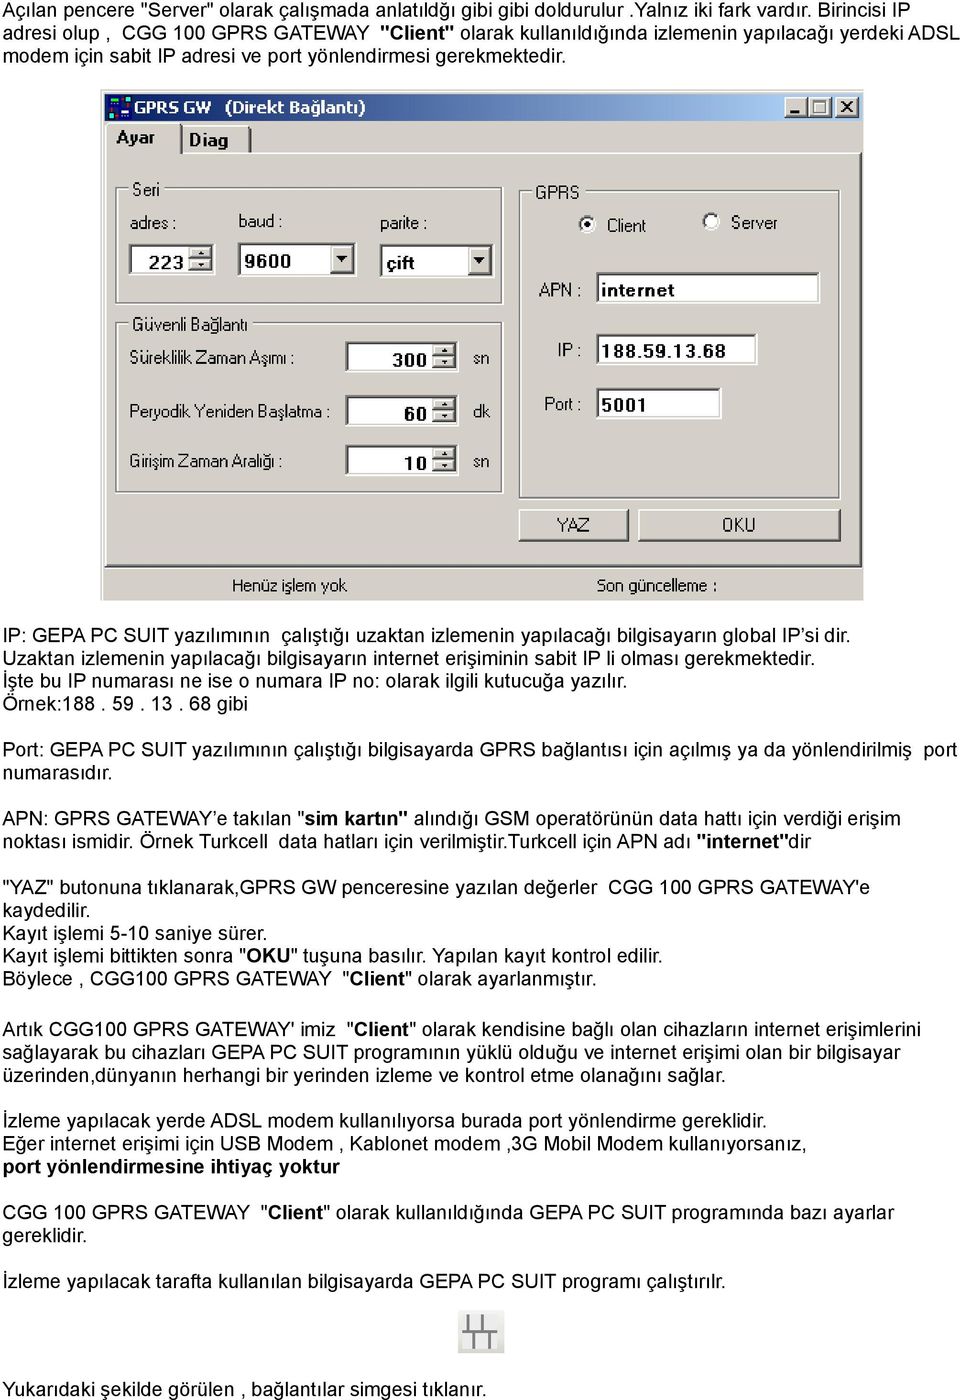 IP: GEPA PC SUIT yazılımının çalıştığı uzaktan izlemenin yapılacağı bilgisayarın global IP si dir. Uzaktan izlemenin yapılacağı bilgisayarın internet erişiminin sabit IP li olması gerekmektedir.